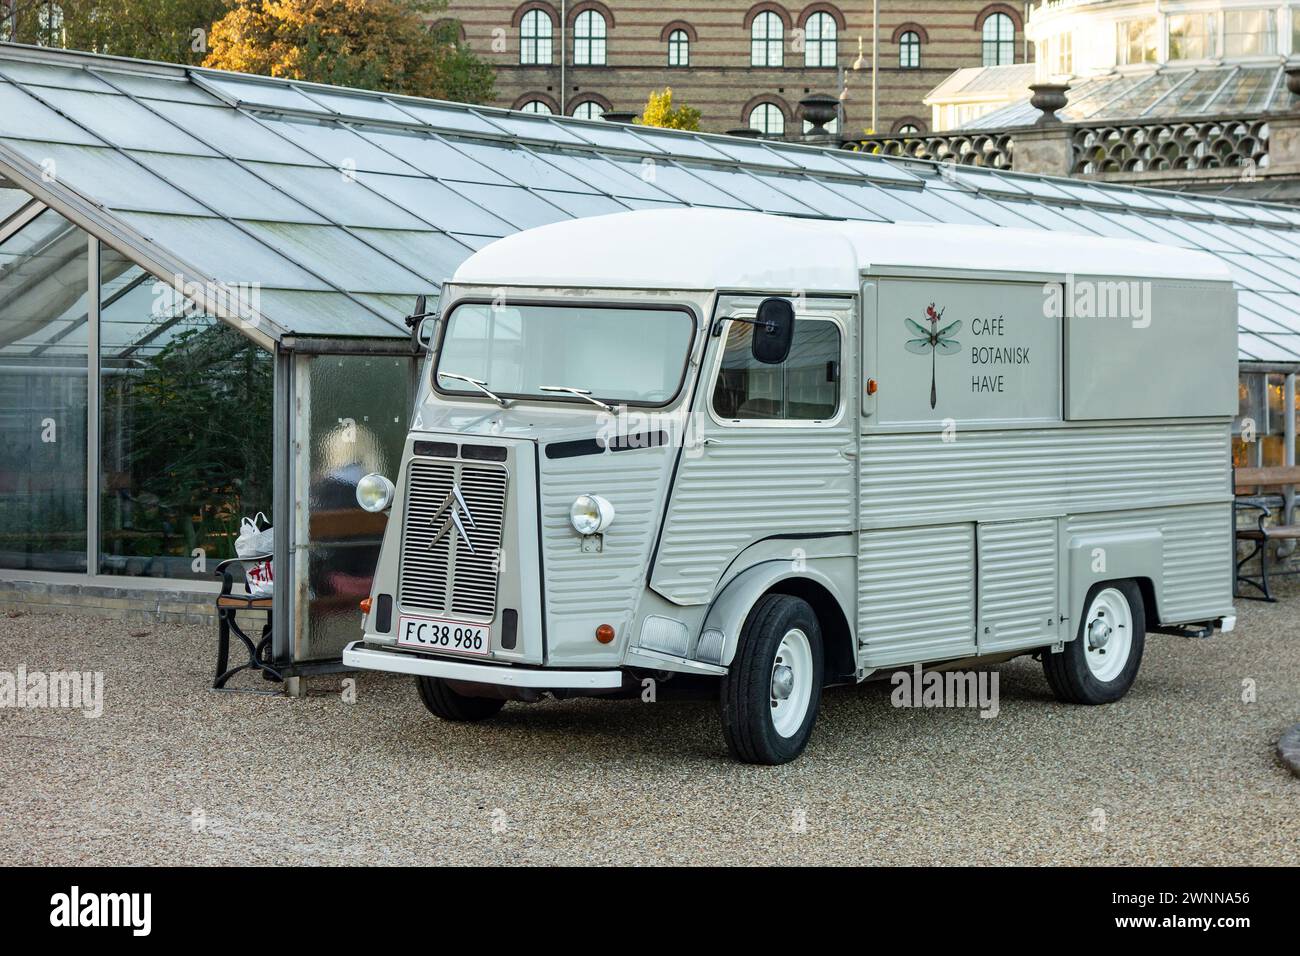 COPENHAGUE, DANEMARK - 28 OCTOBRE 2014 : légendaire camionnette française Citroën type H du Cafe Botanisk ont jardin botanique Banque D'Images